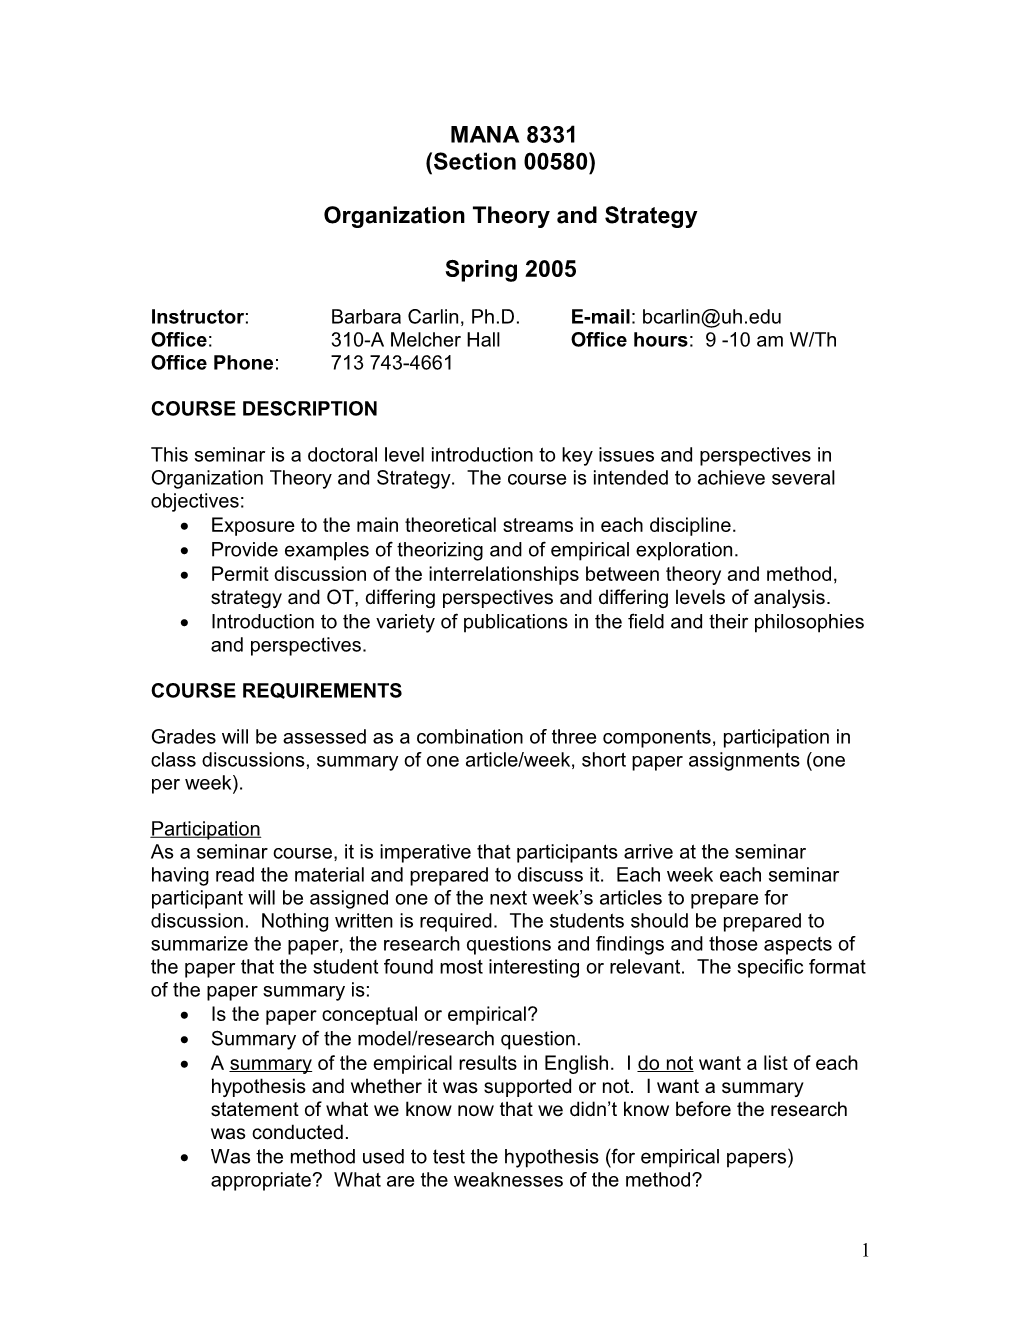 Organization Theory and Strategy